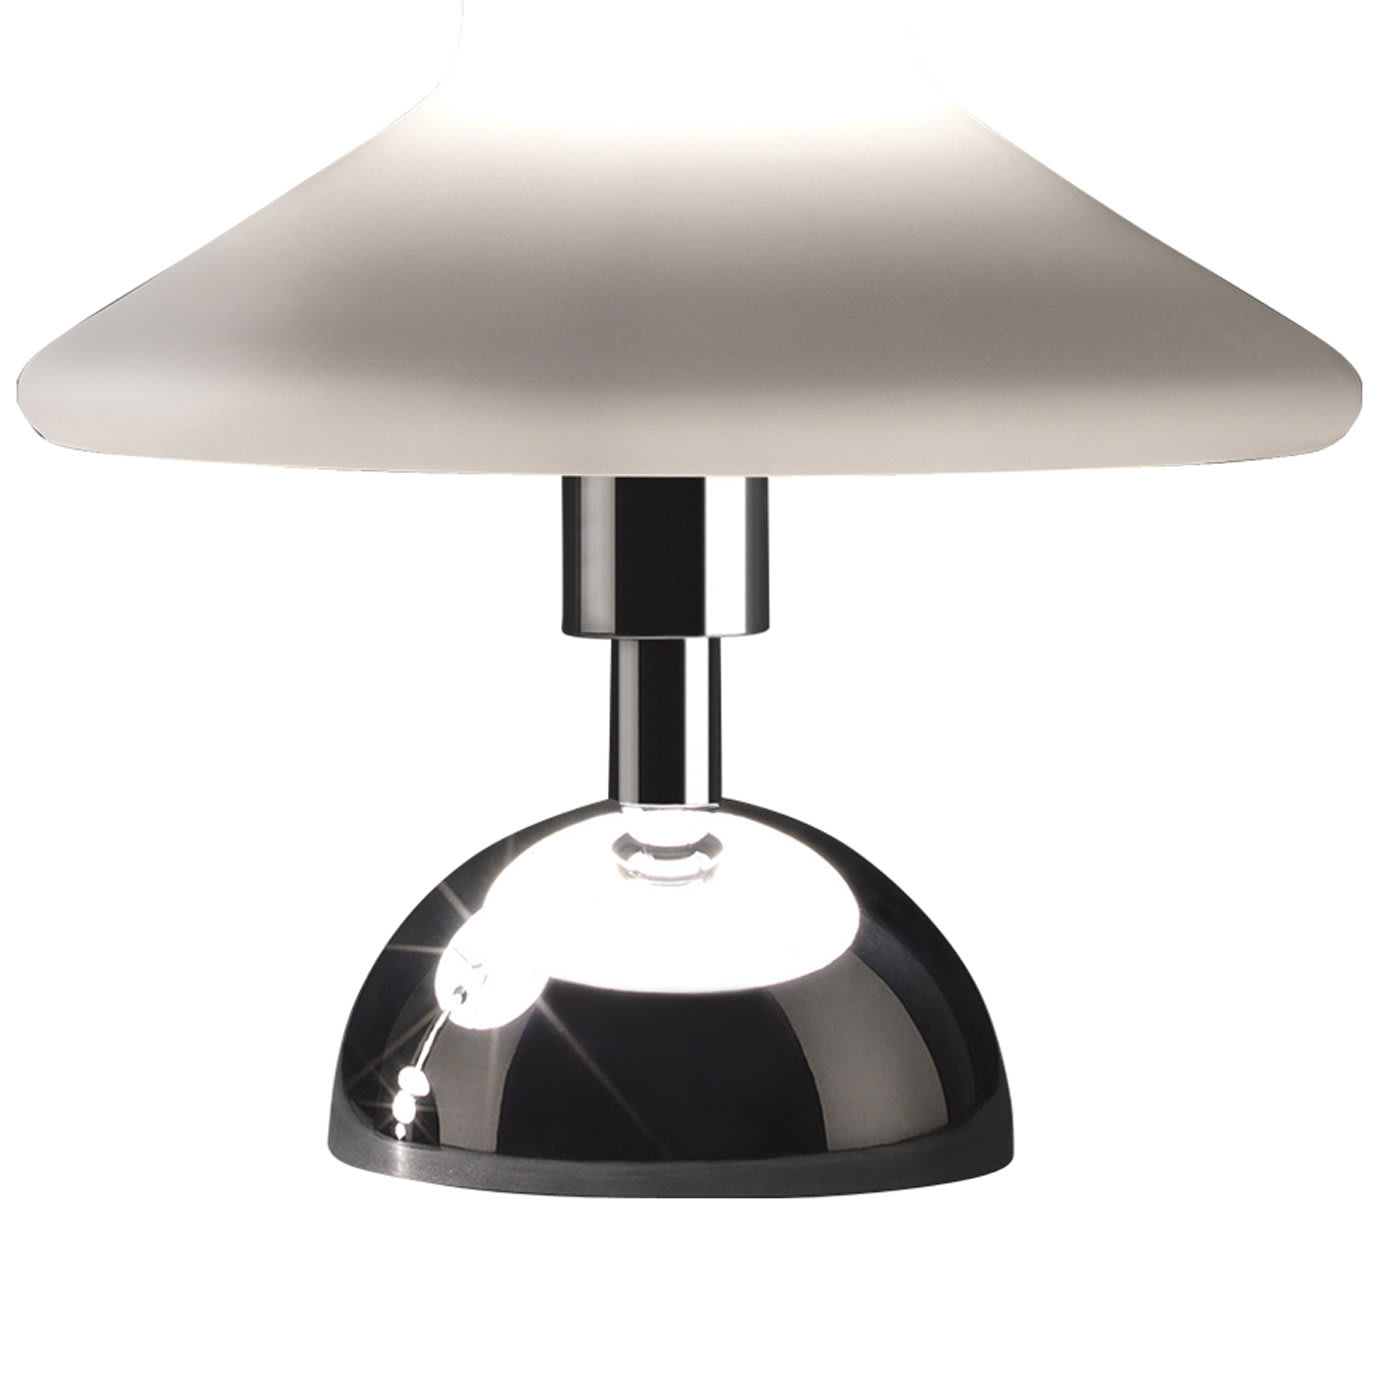 Olly Small Table Lamp - Tato